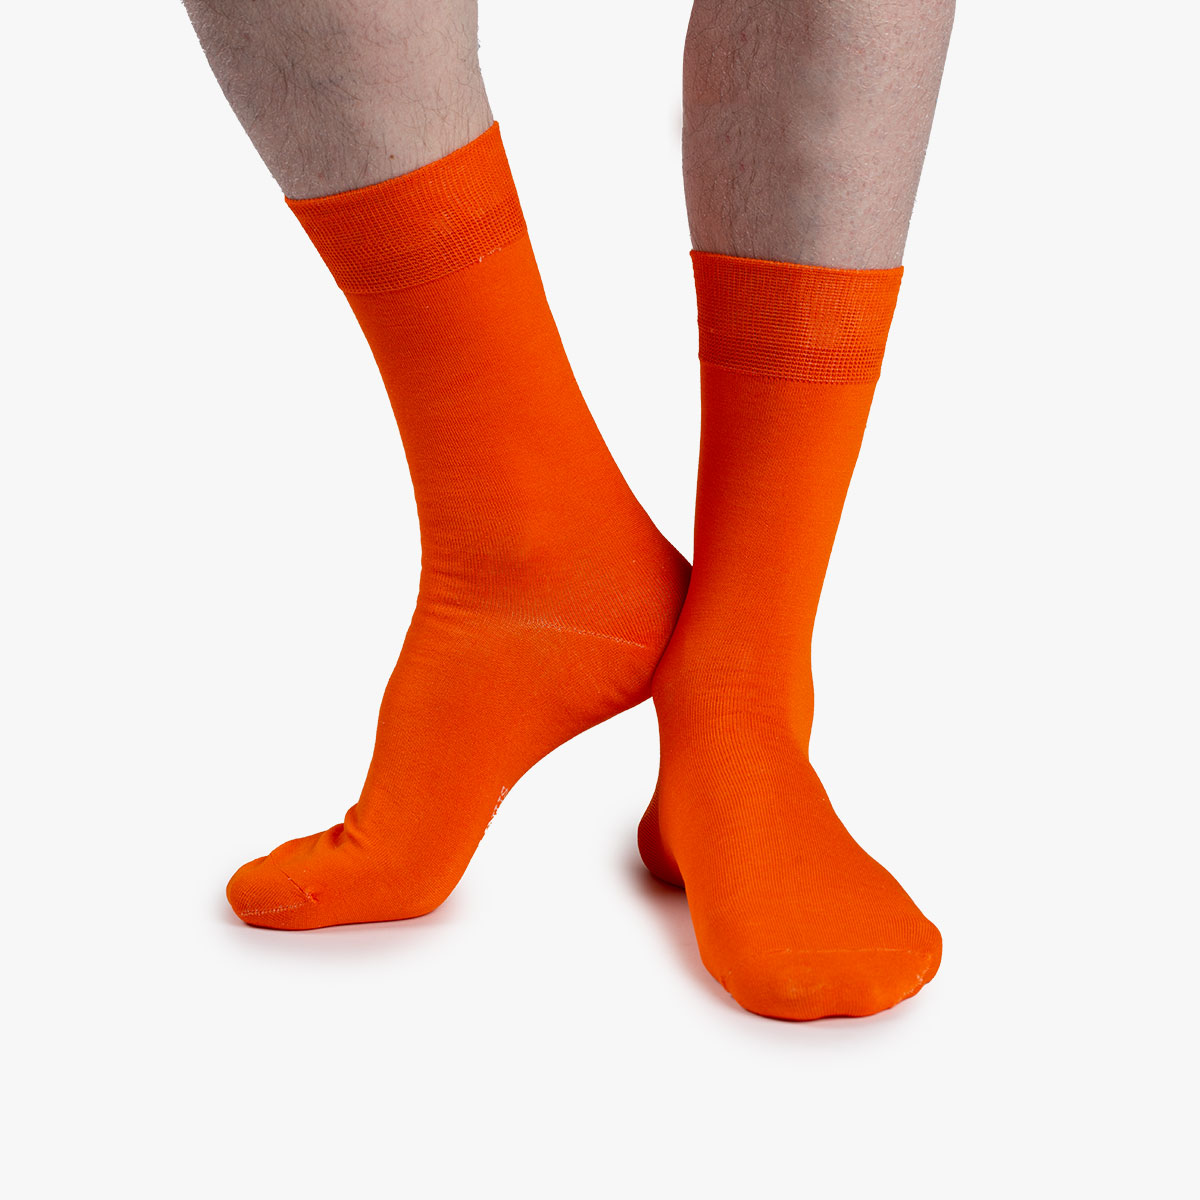 Socken in orange aus der Sockenbox am Fuß